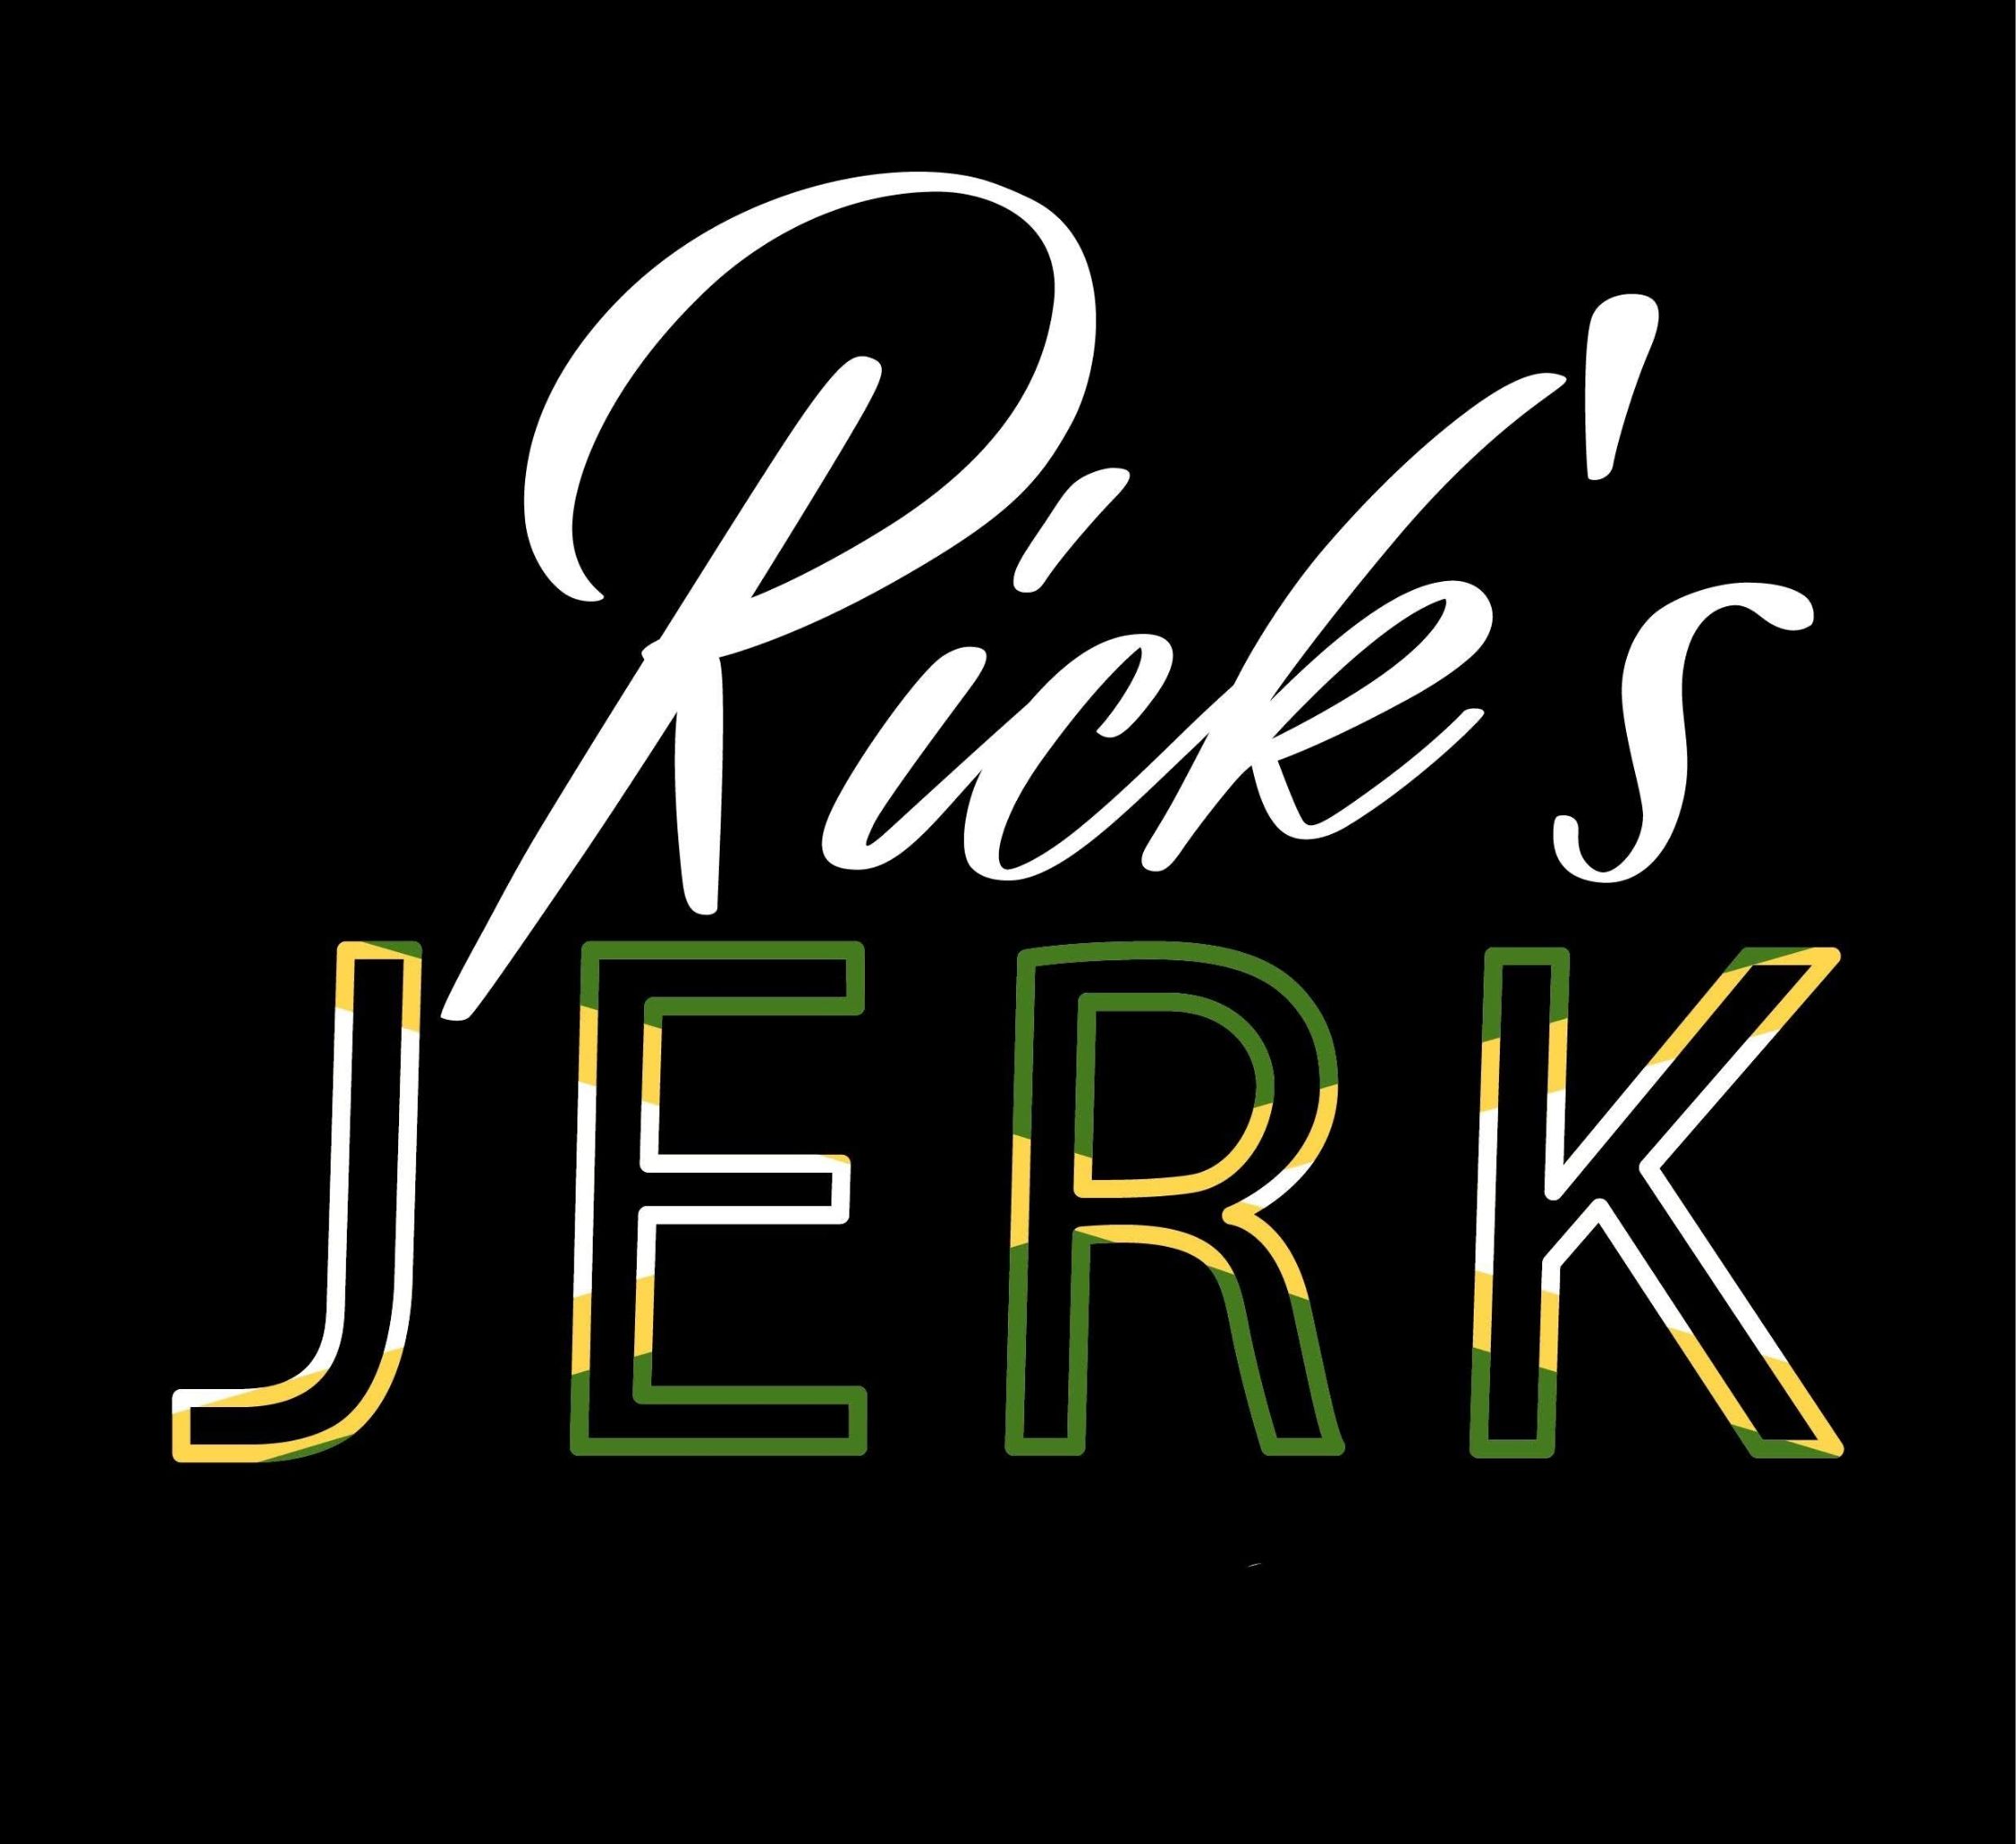 Ricks Jerk